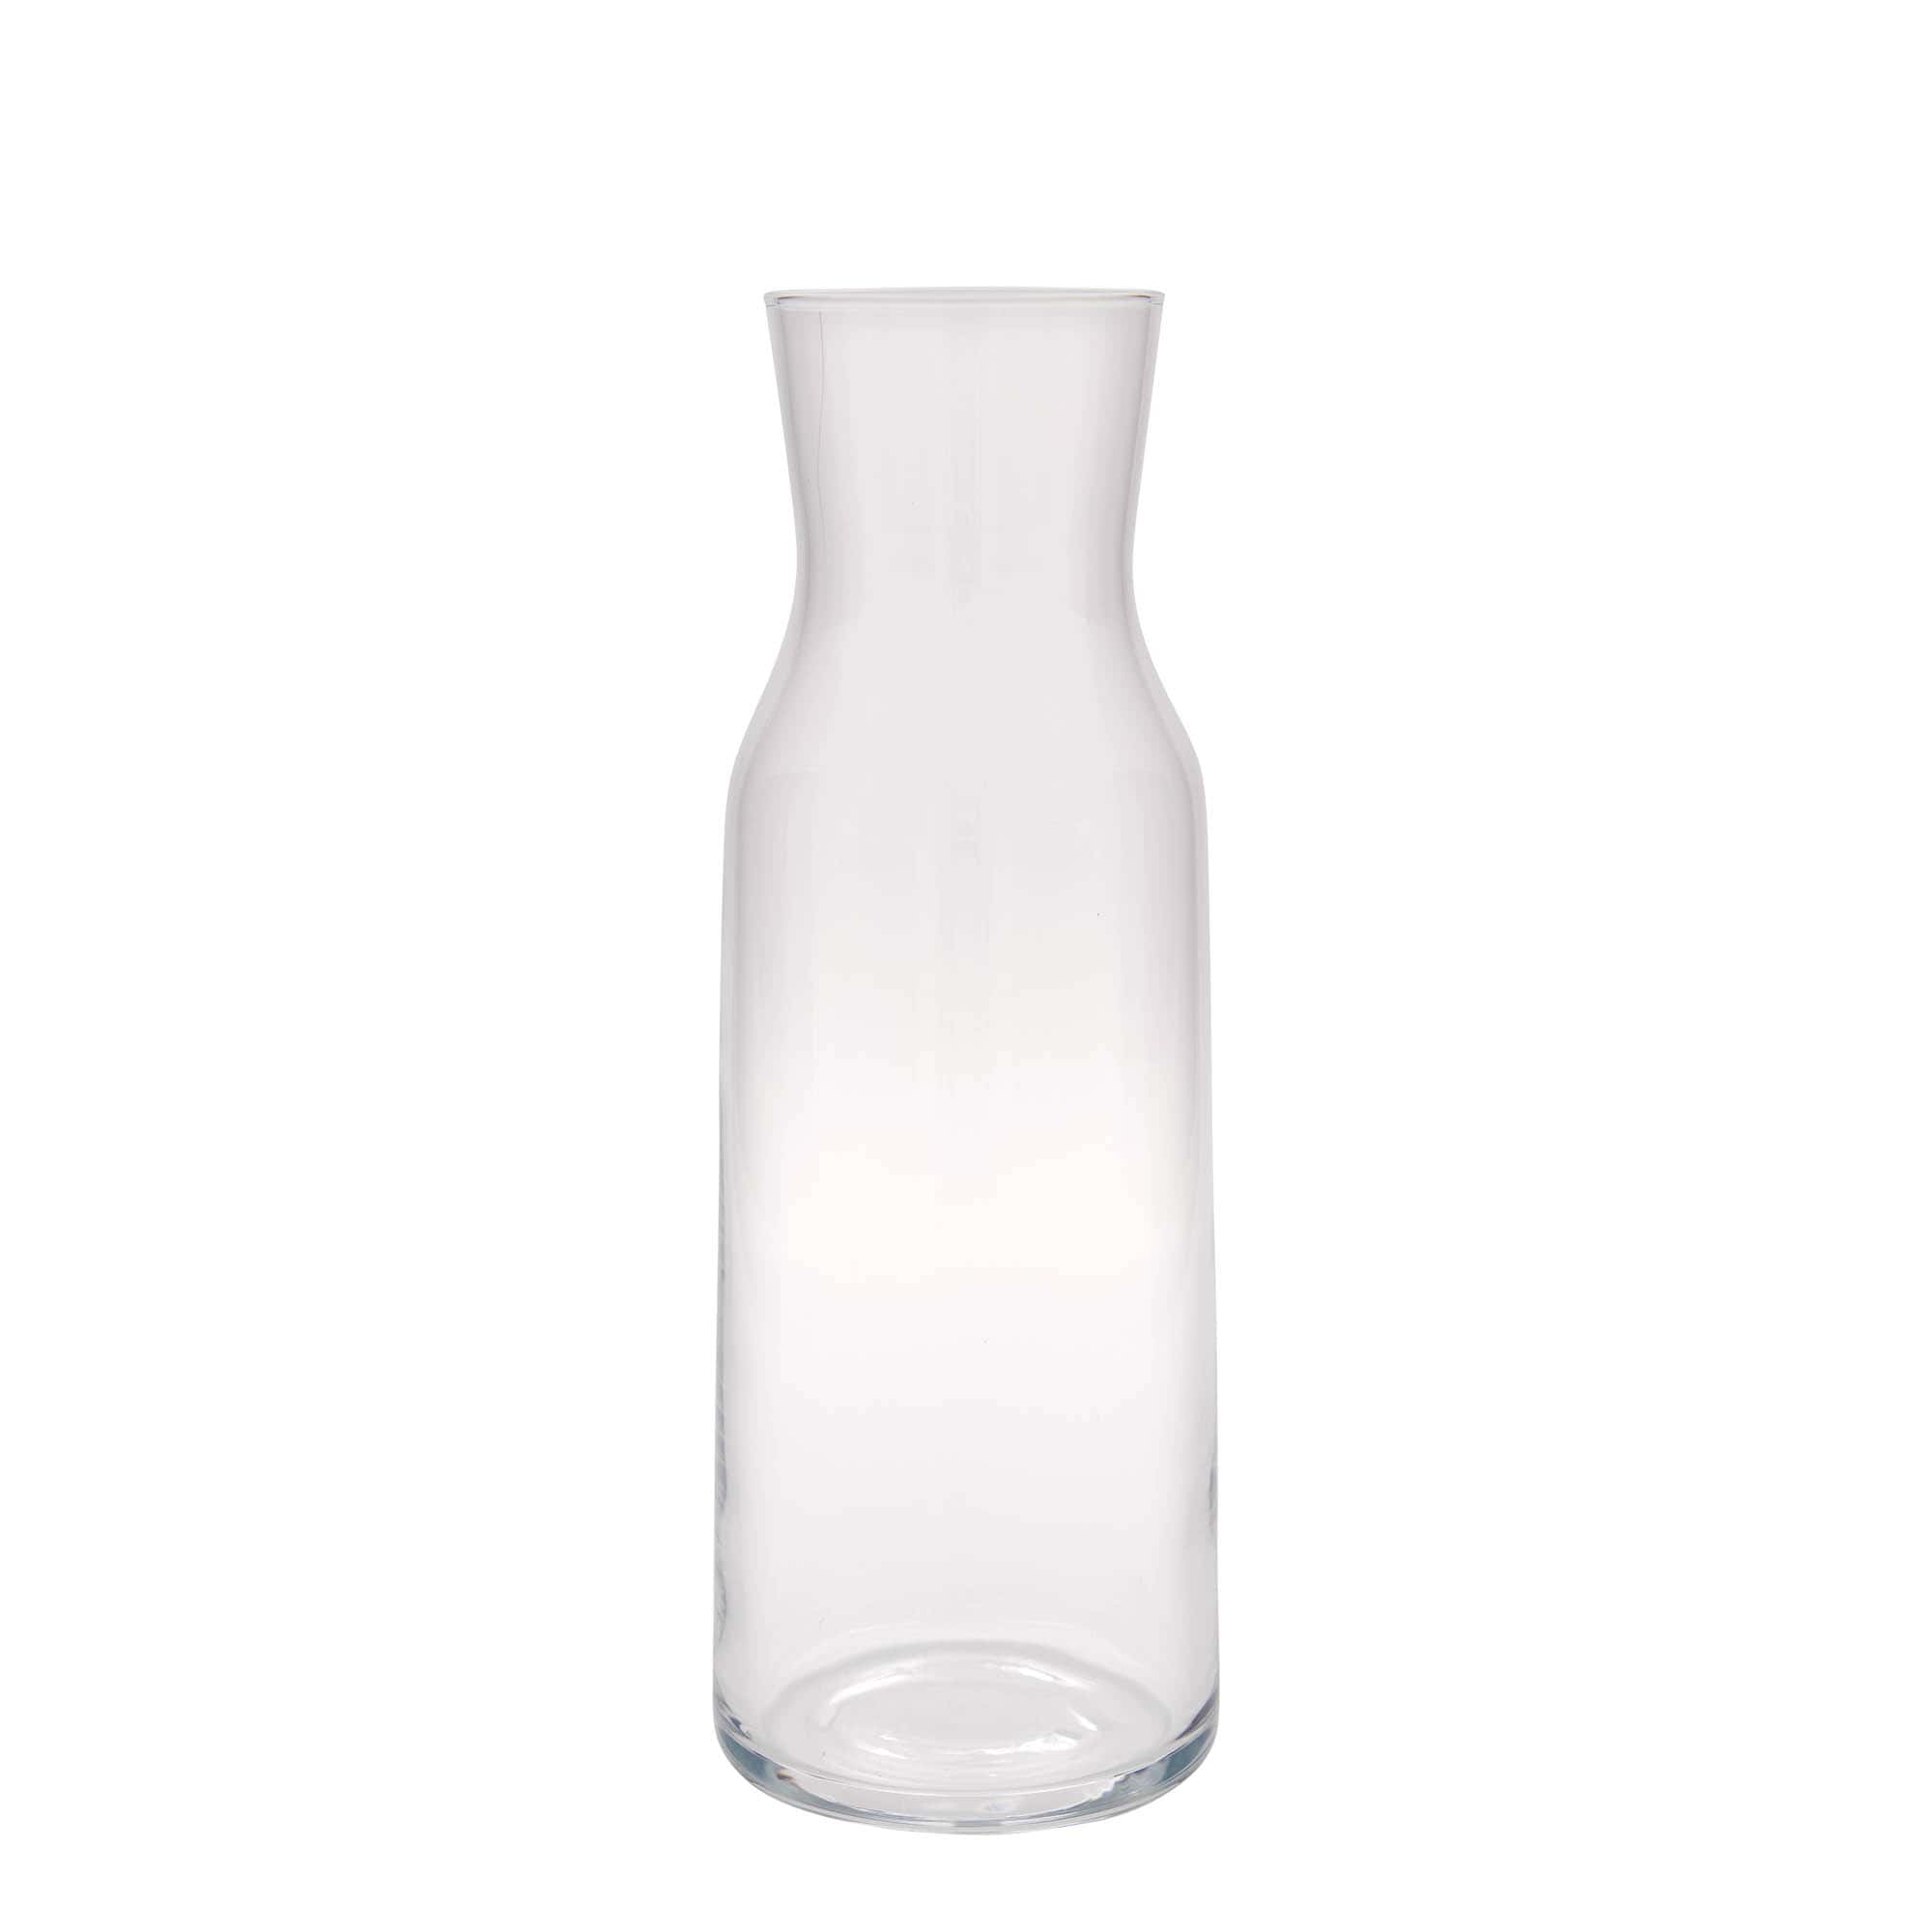 1,100 ml carafe 'Aquaria', glass